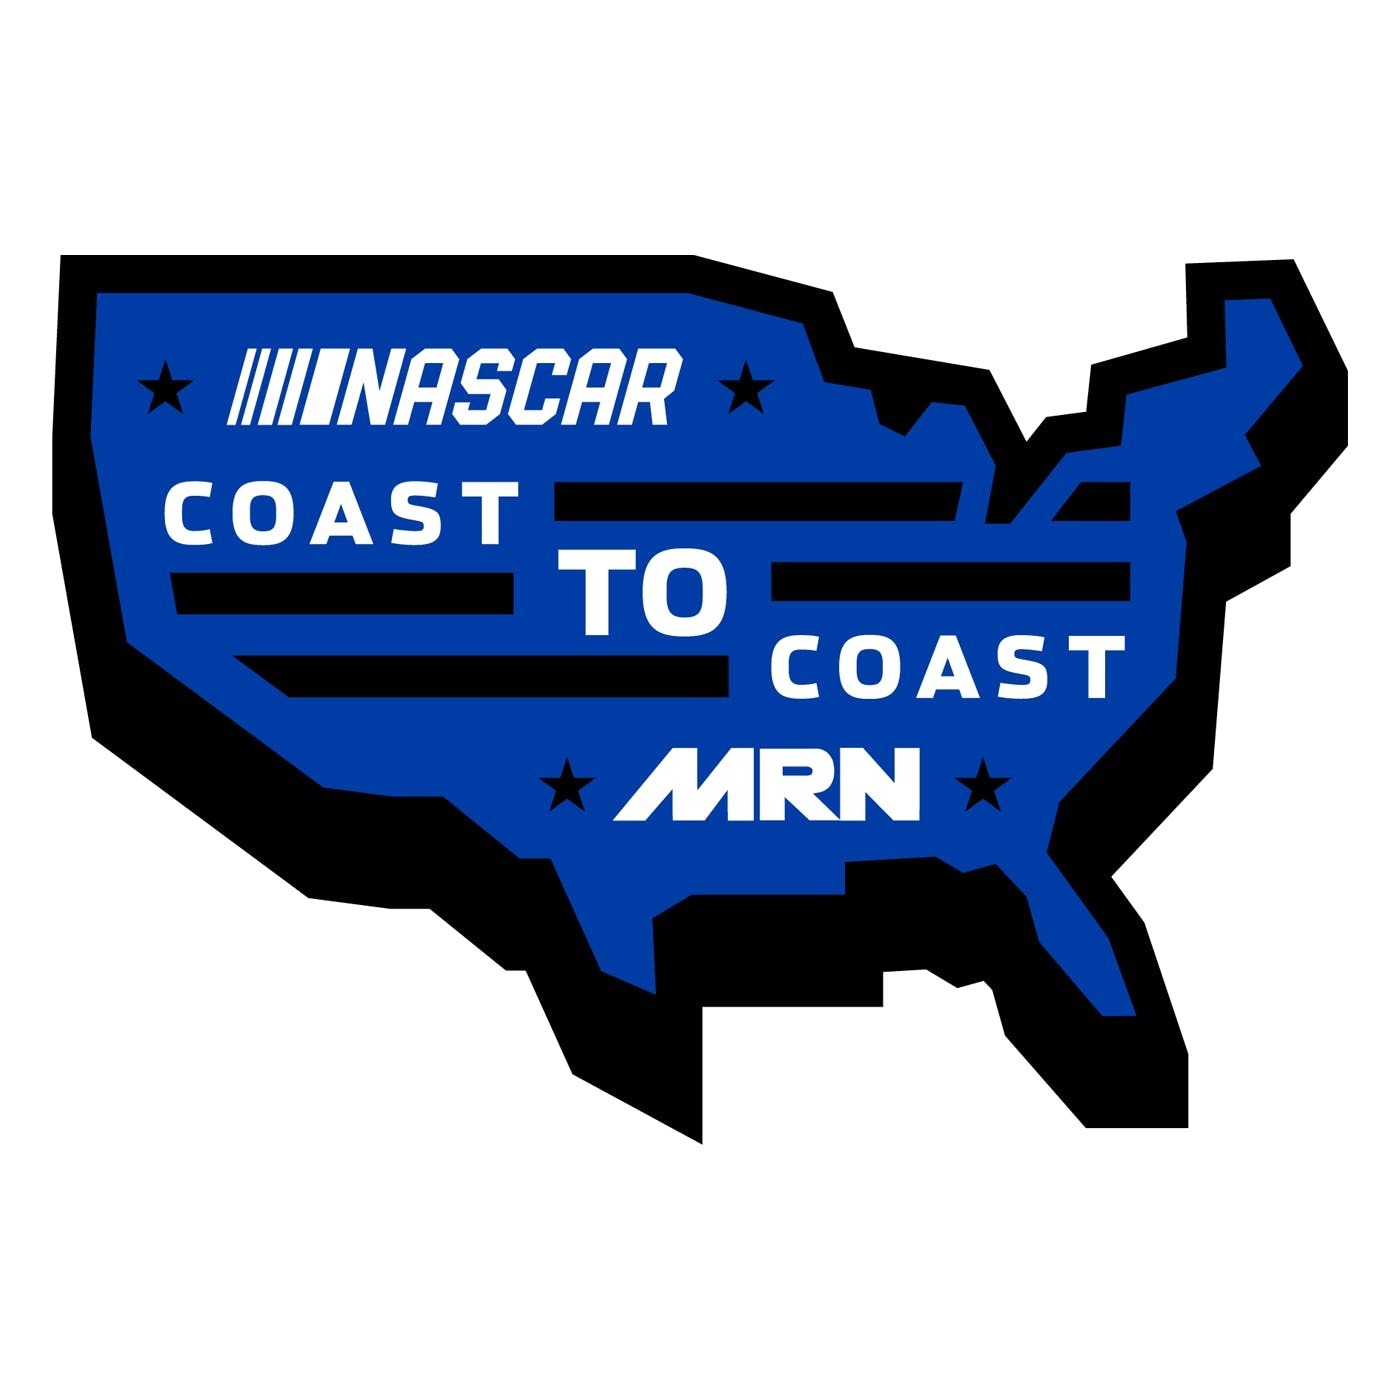 NASCAR Coast to Coast - May 22, 2019